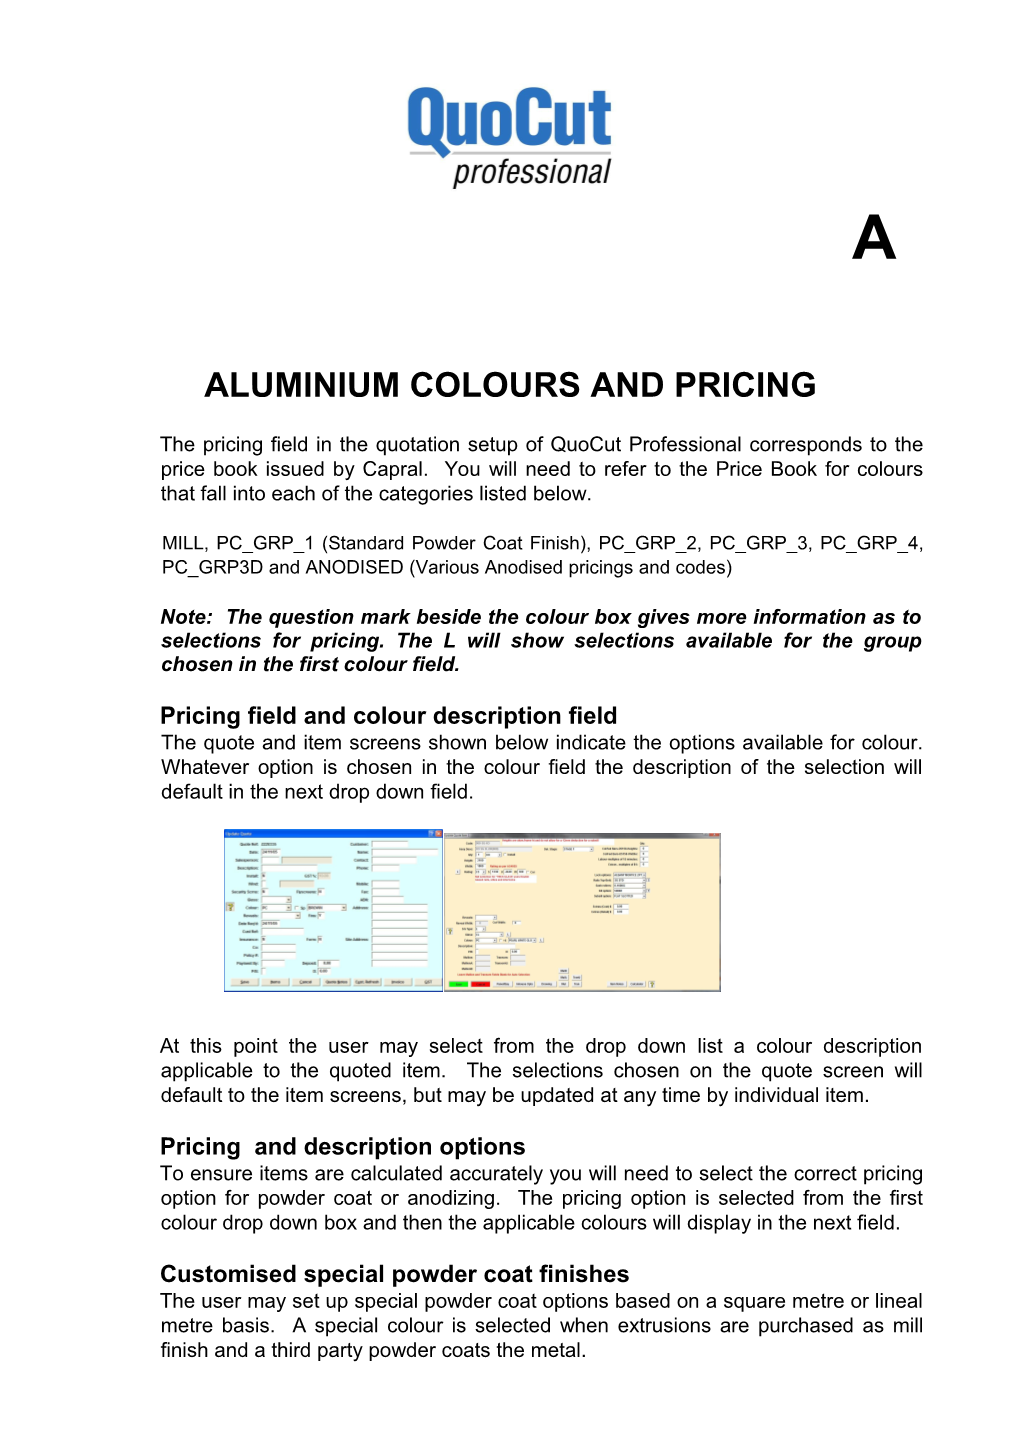 Aluminium Colours and Pricing